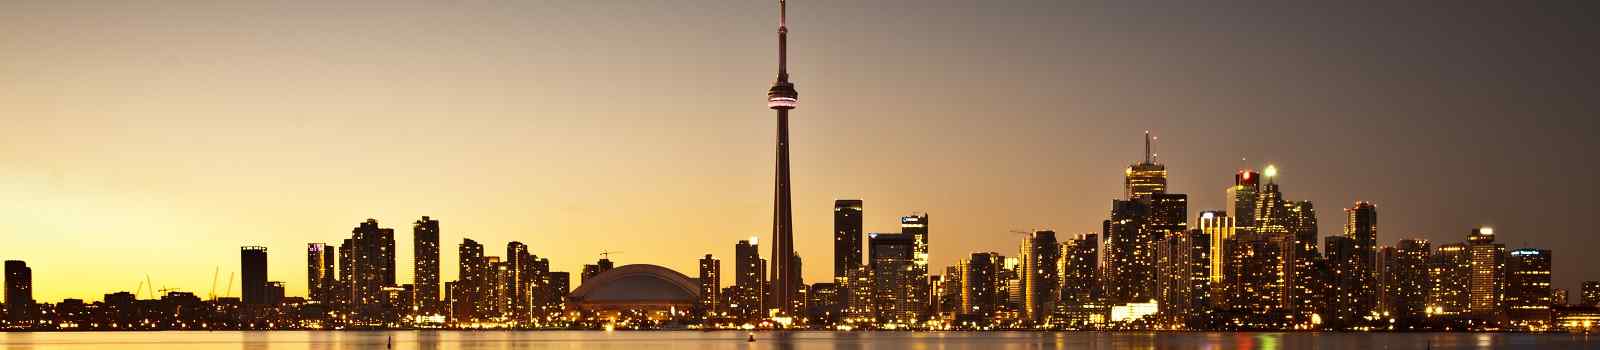 BUS-GLANZ-CAD -Kanada Toronto Panorama abend 107157971